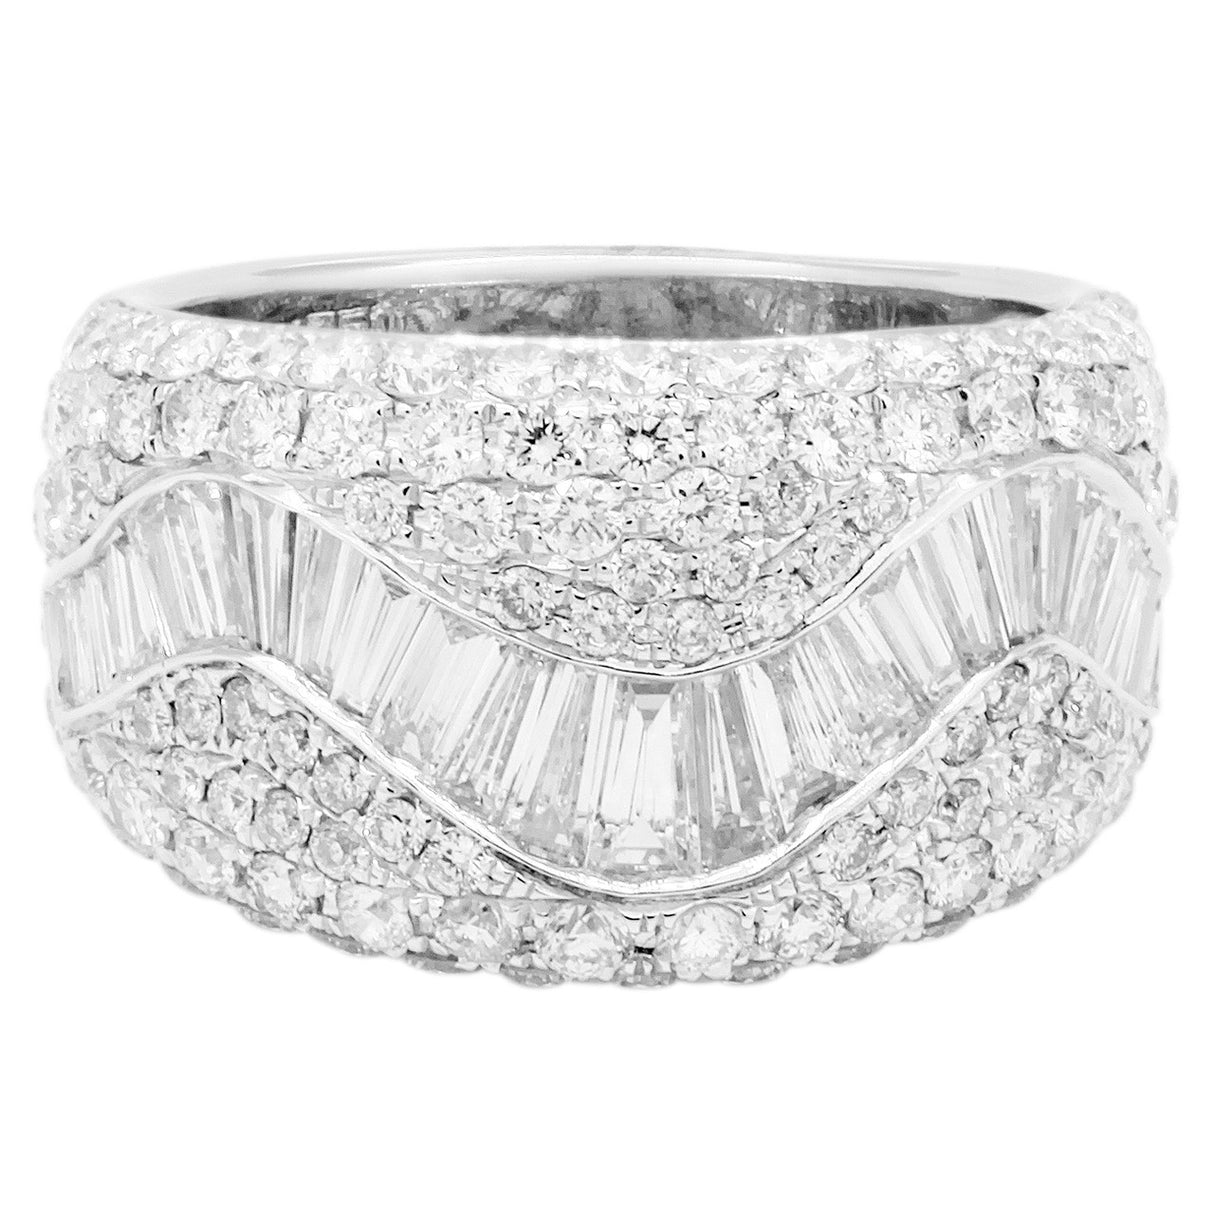 18K White Gold 2.89 Carat Diamond Ring